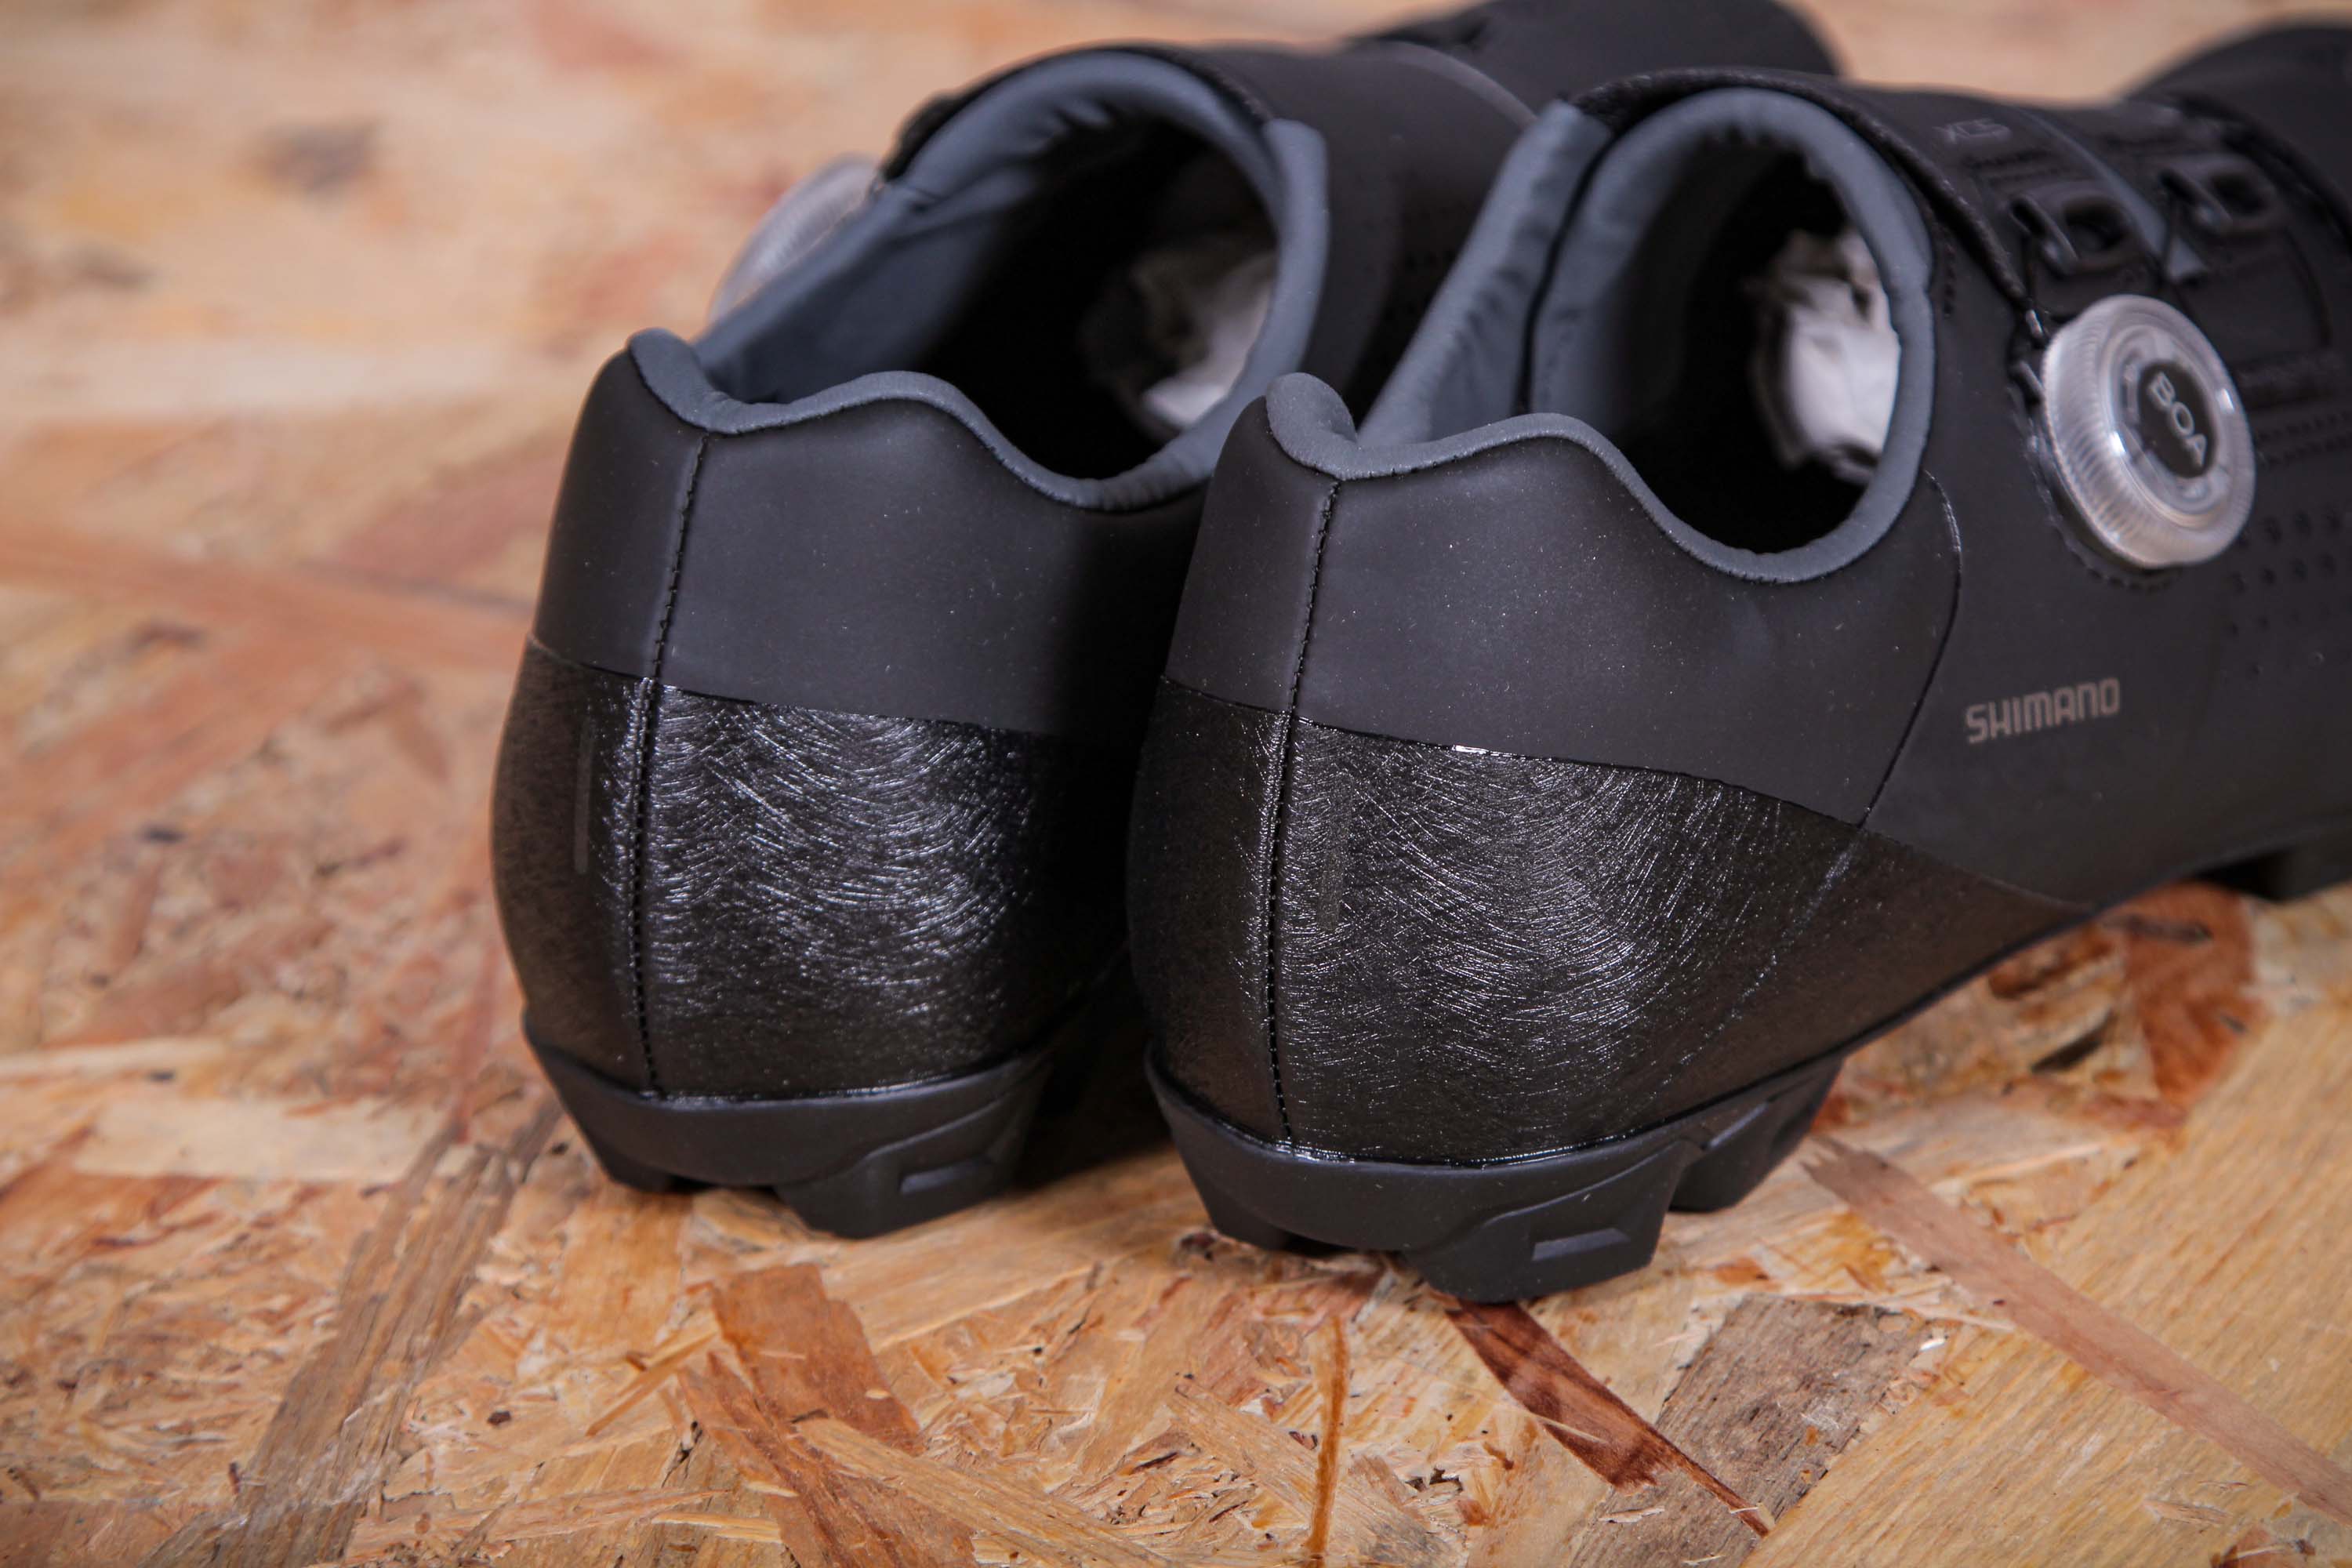 Shimano Women’s XC5 Cycling Shoes SH-XC501 Size 40 Rep Sample $160 